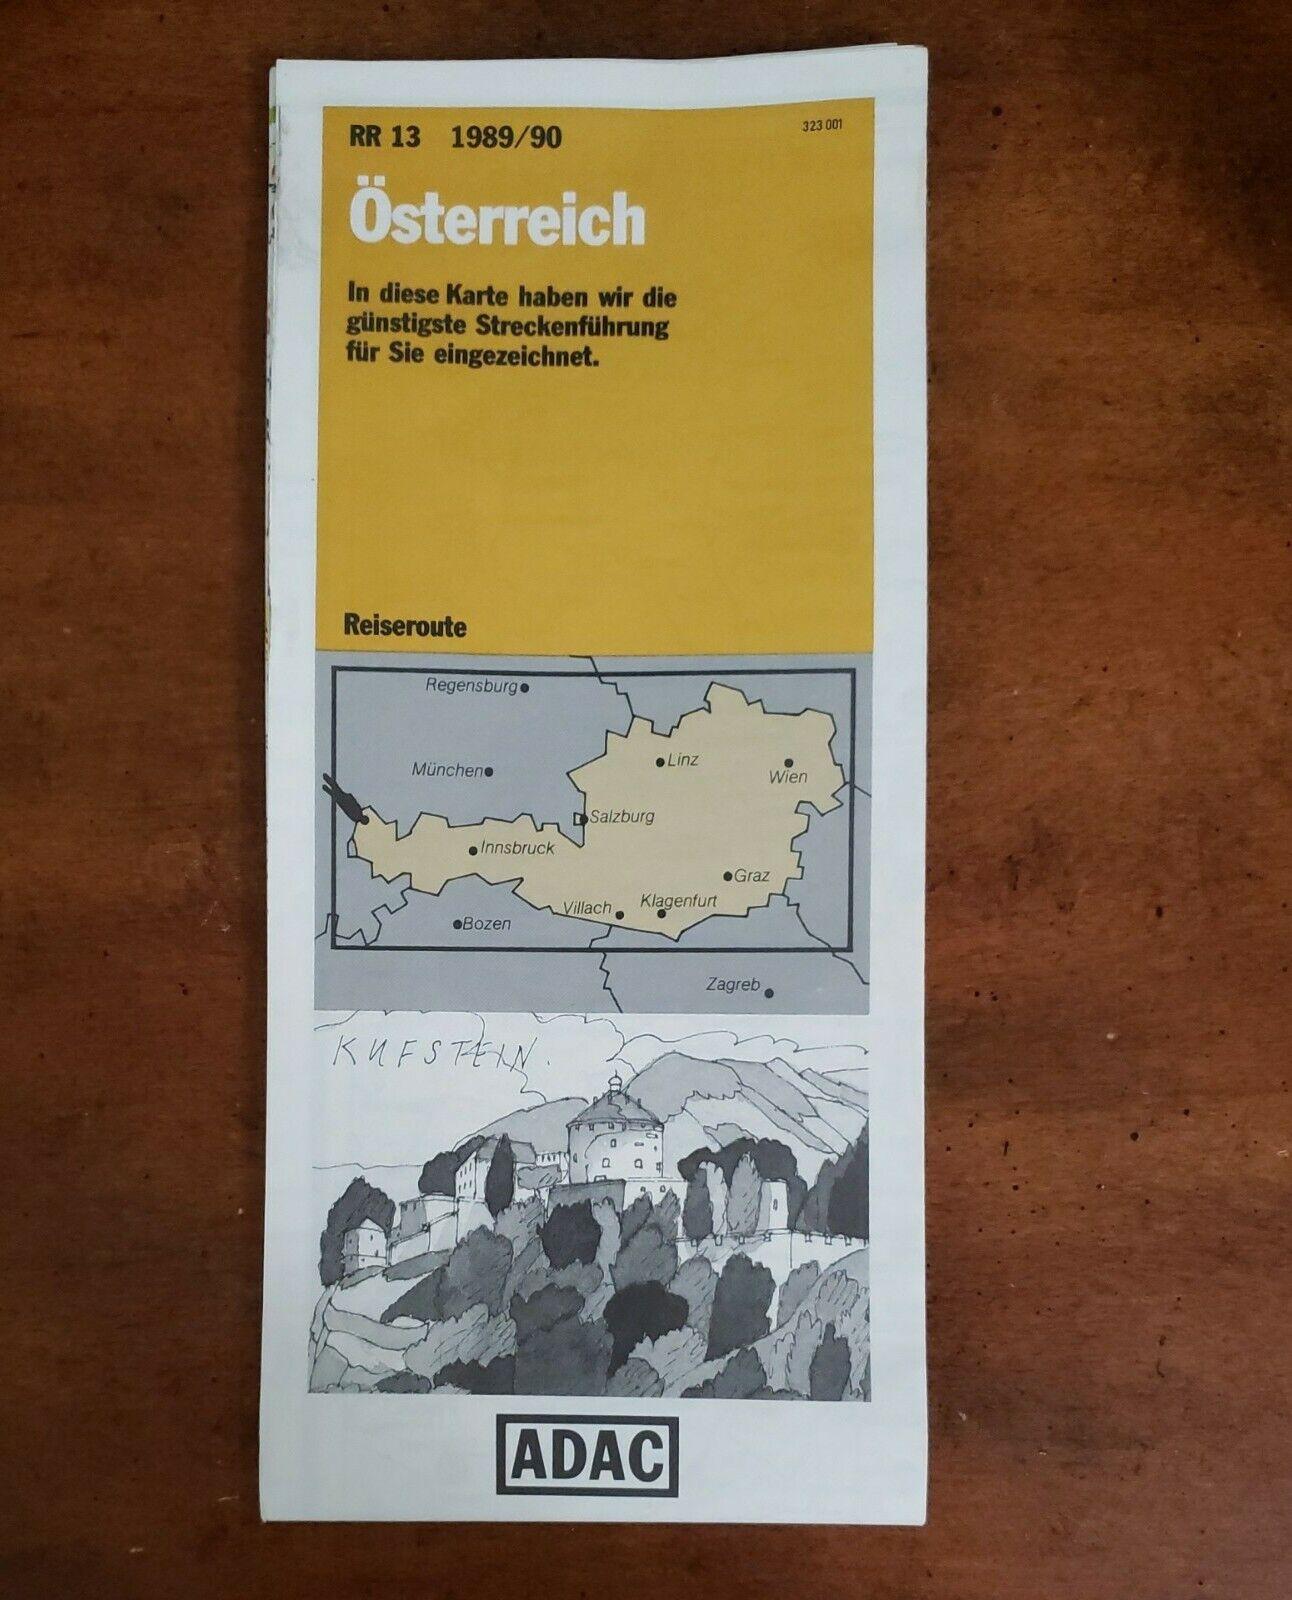 Vintage ADAC Road Map Osterreich 1989/90 Reiseroute RR13 Austria